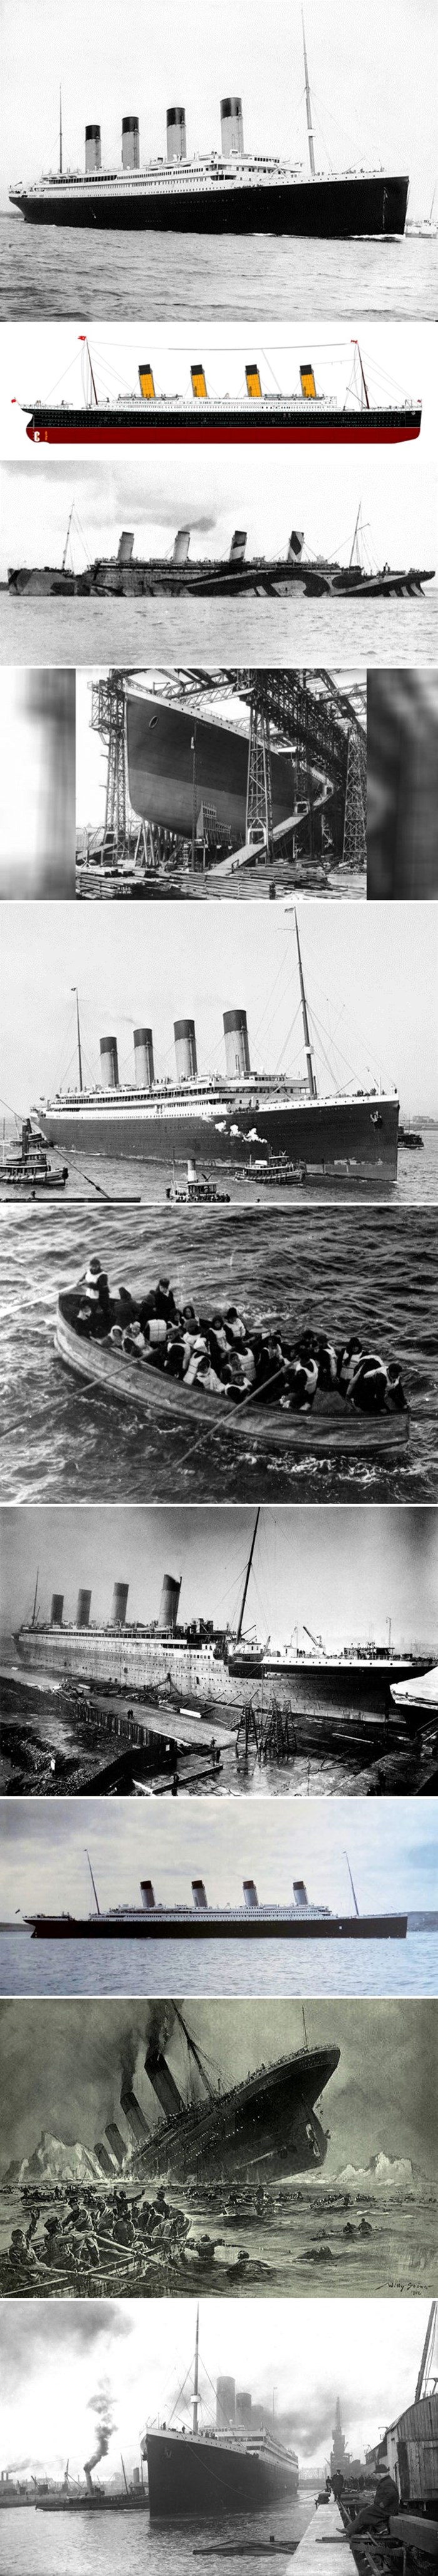 Pojavile su se nove teorije zbog kojih tvrde da Titanic nikad nije potonuo